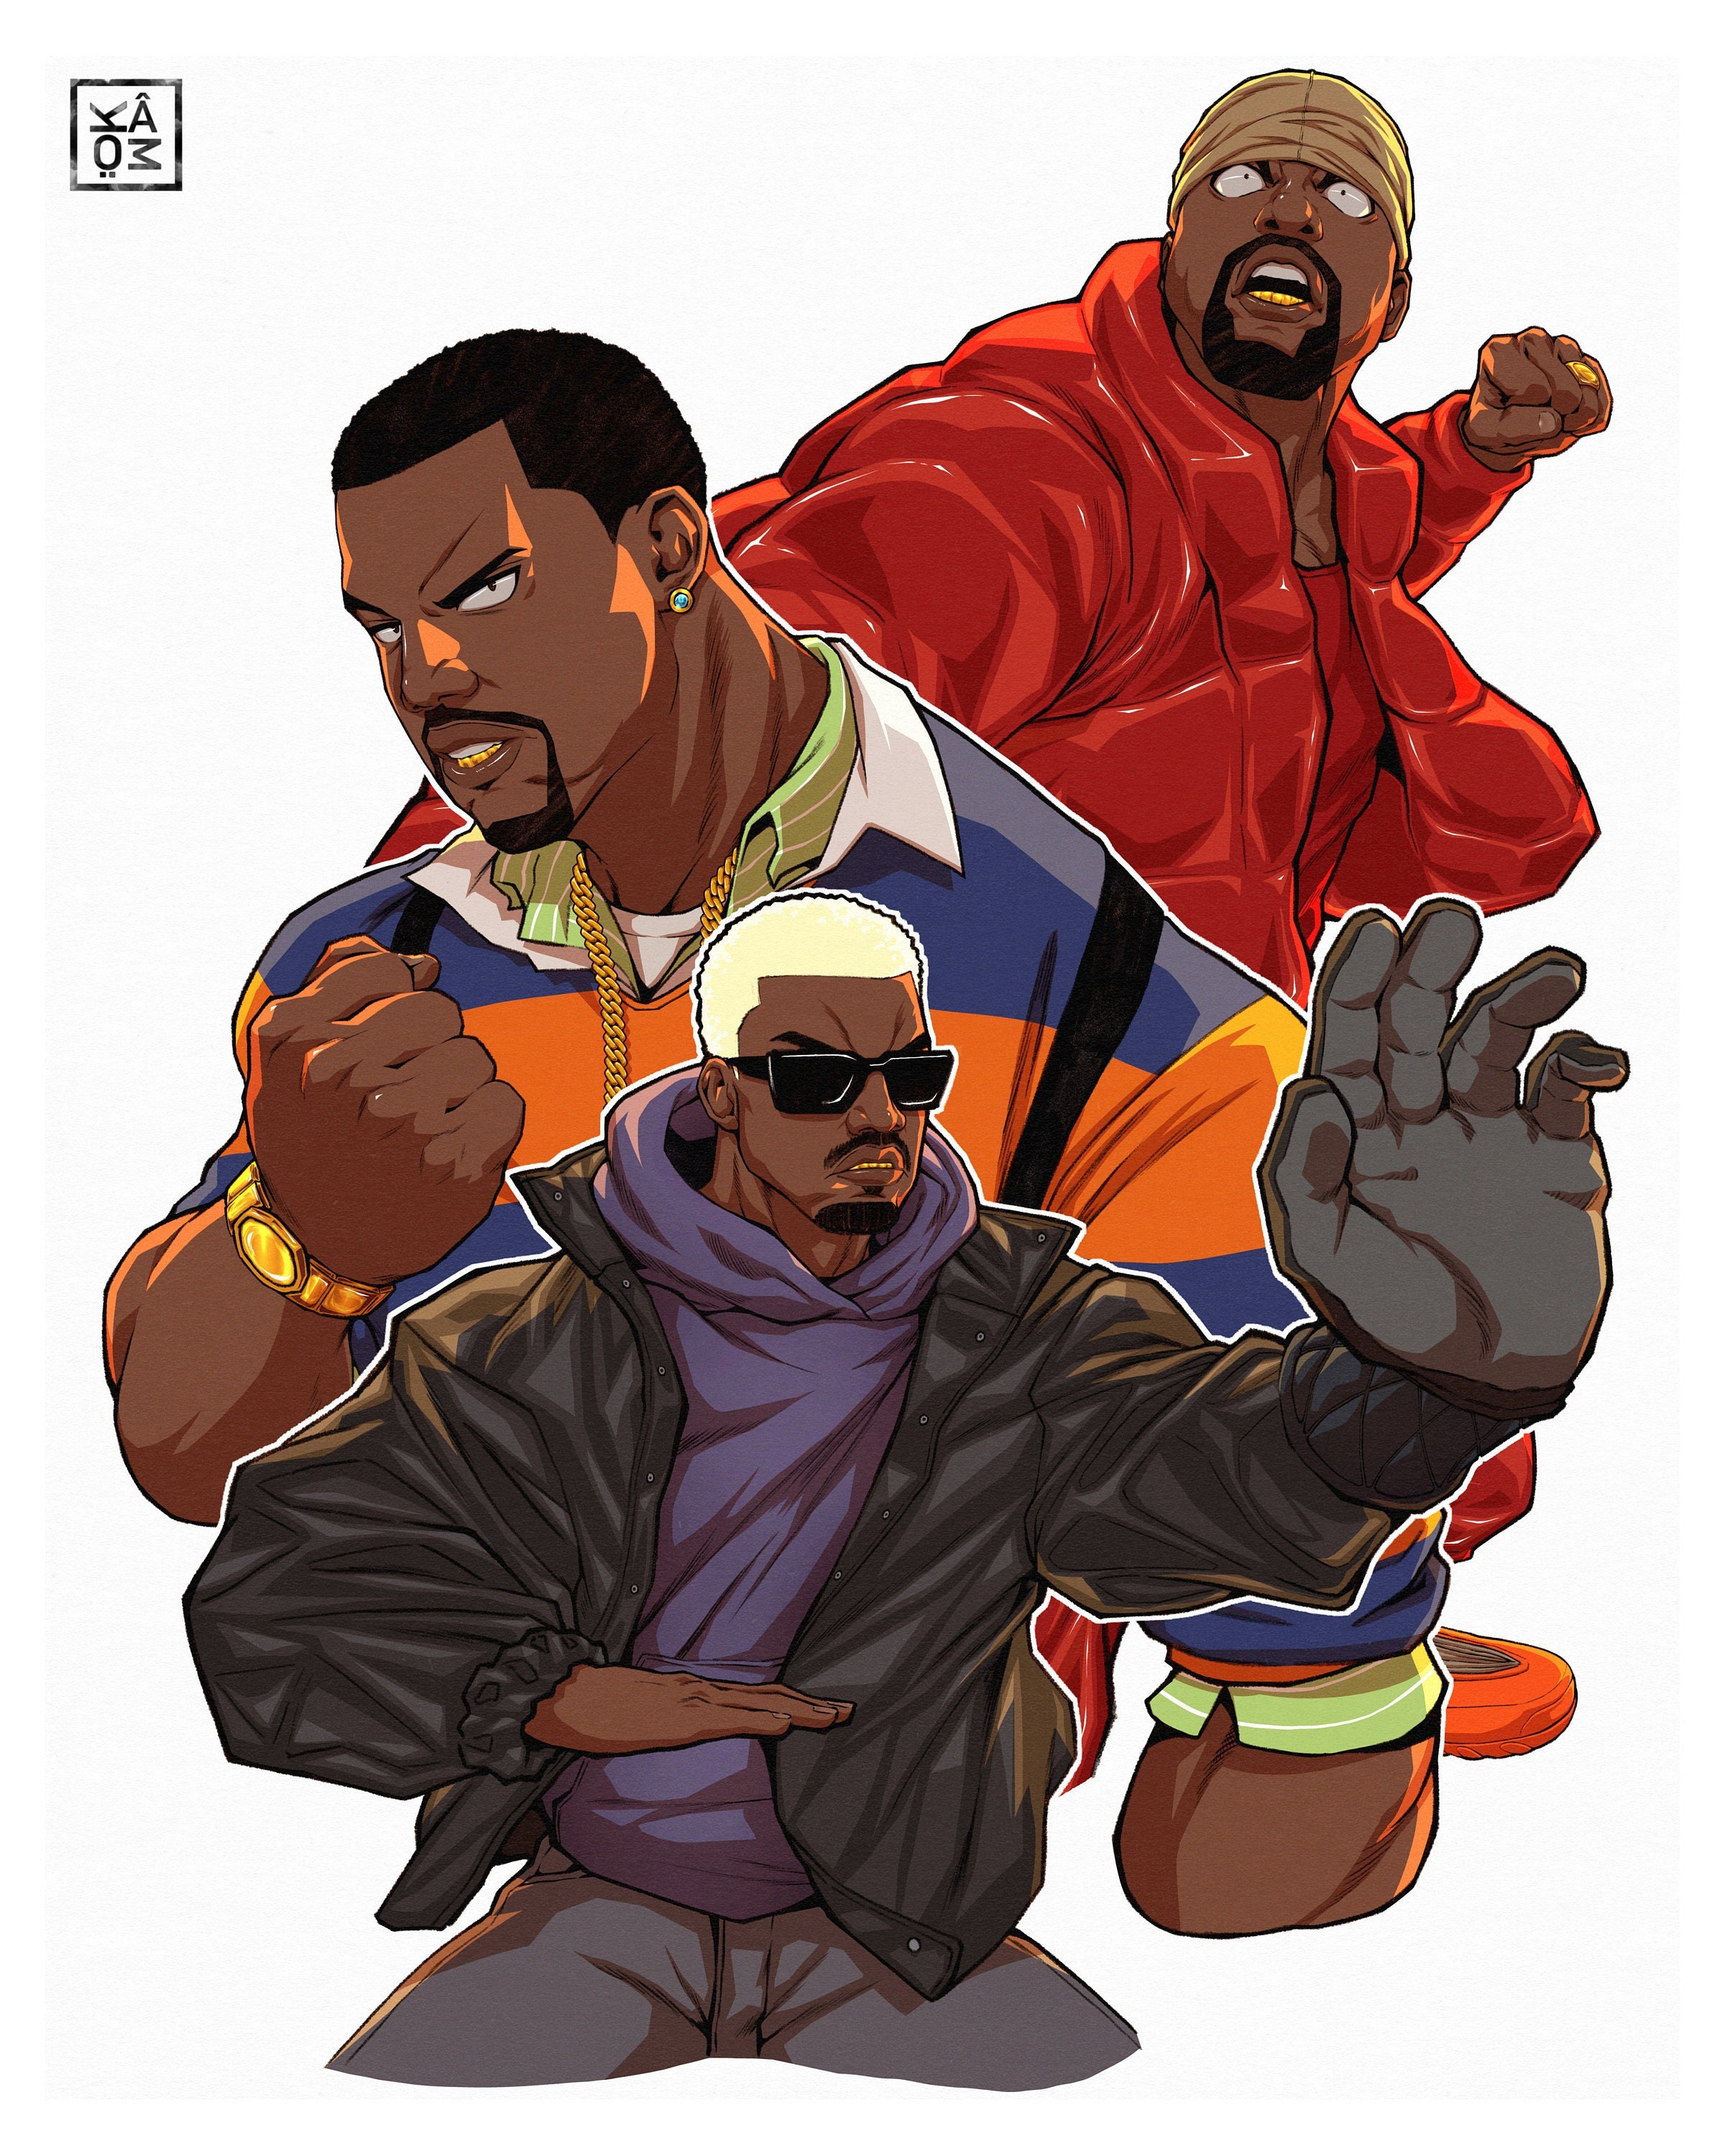 prompthunt: Op Art rap album cover for Kanye West DONDA 2 designed